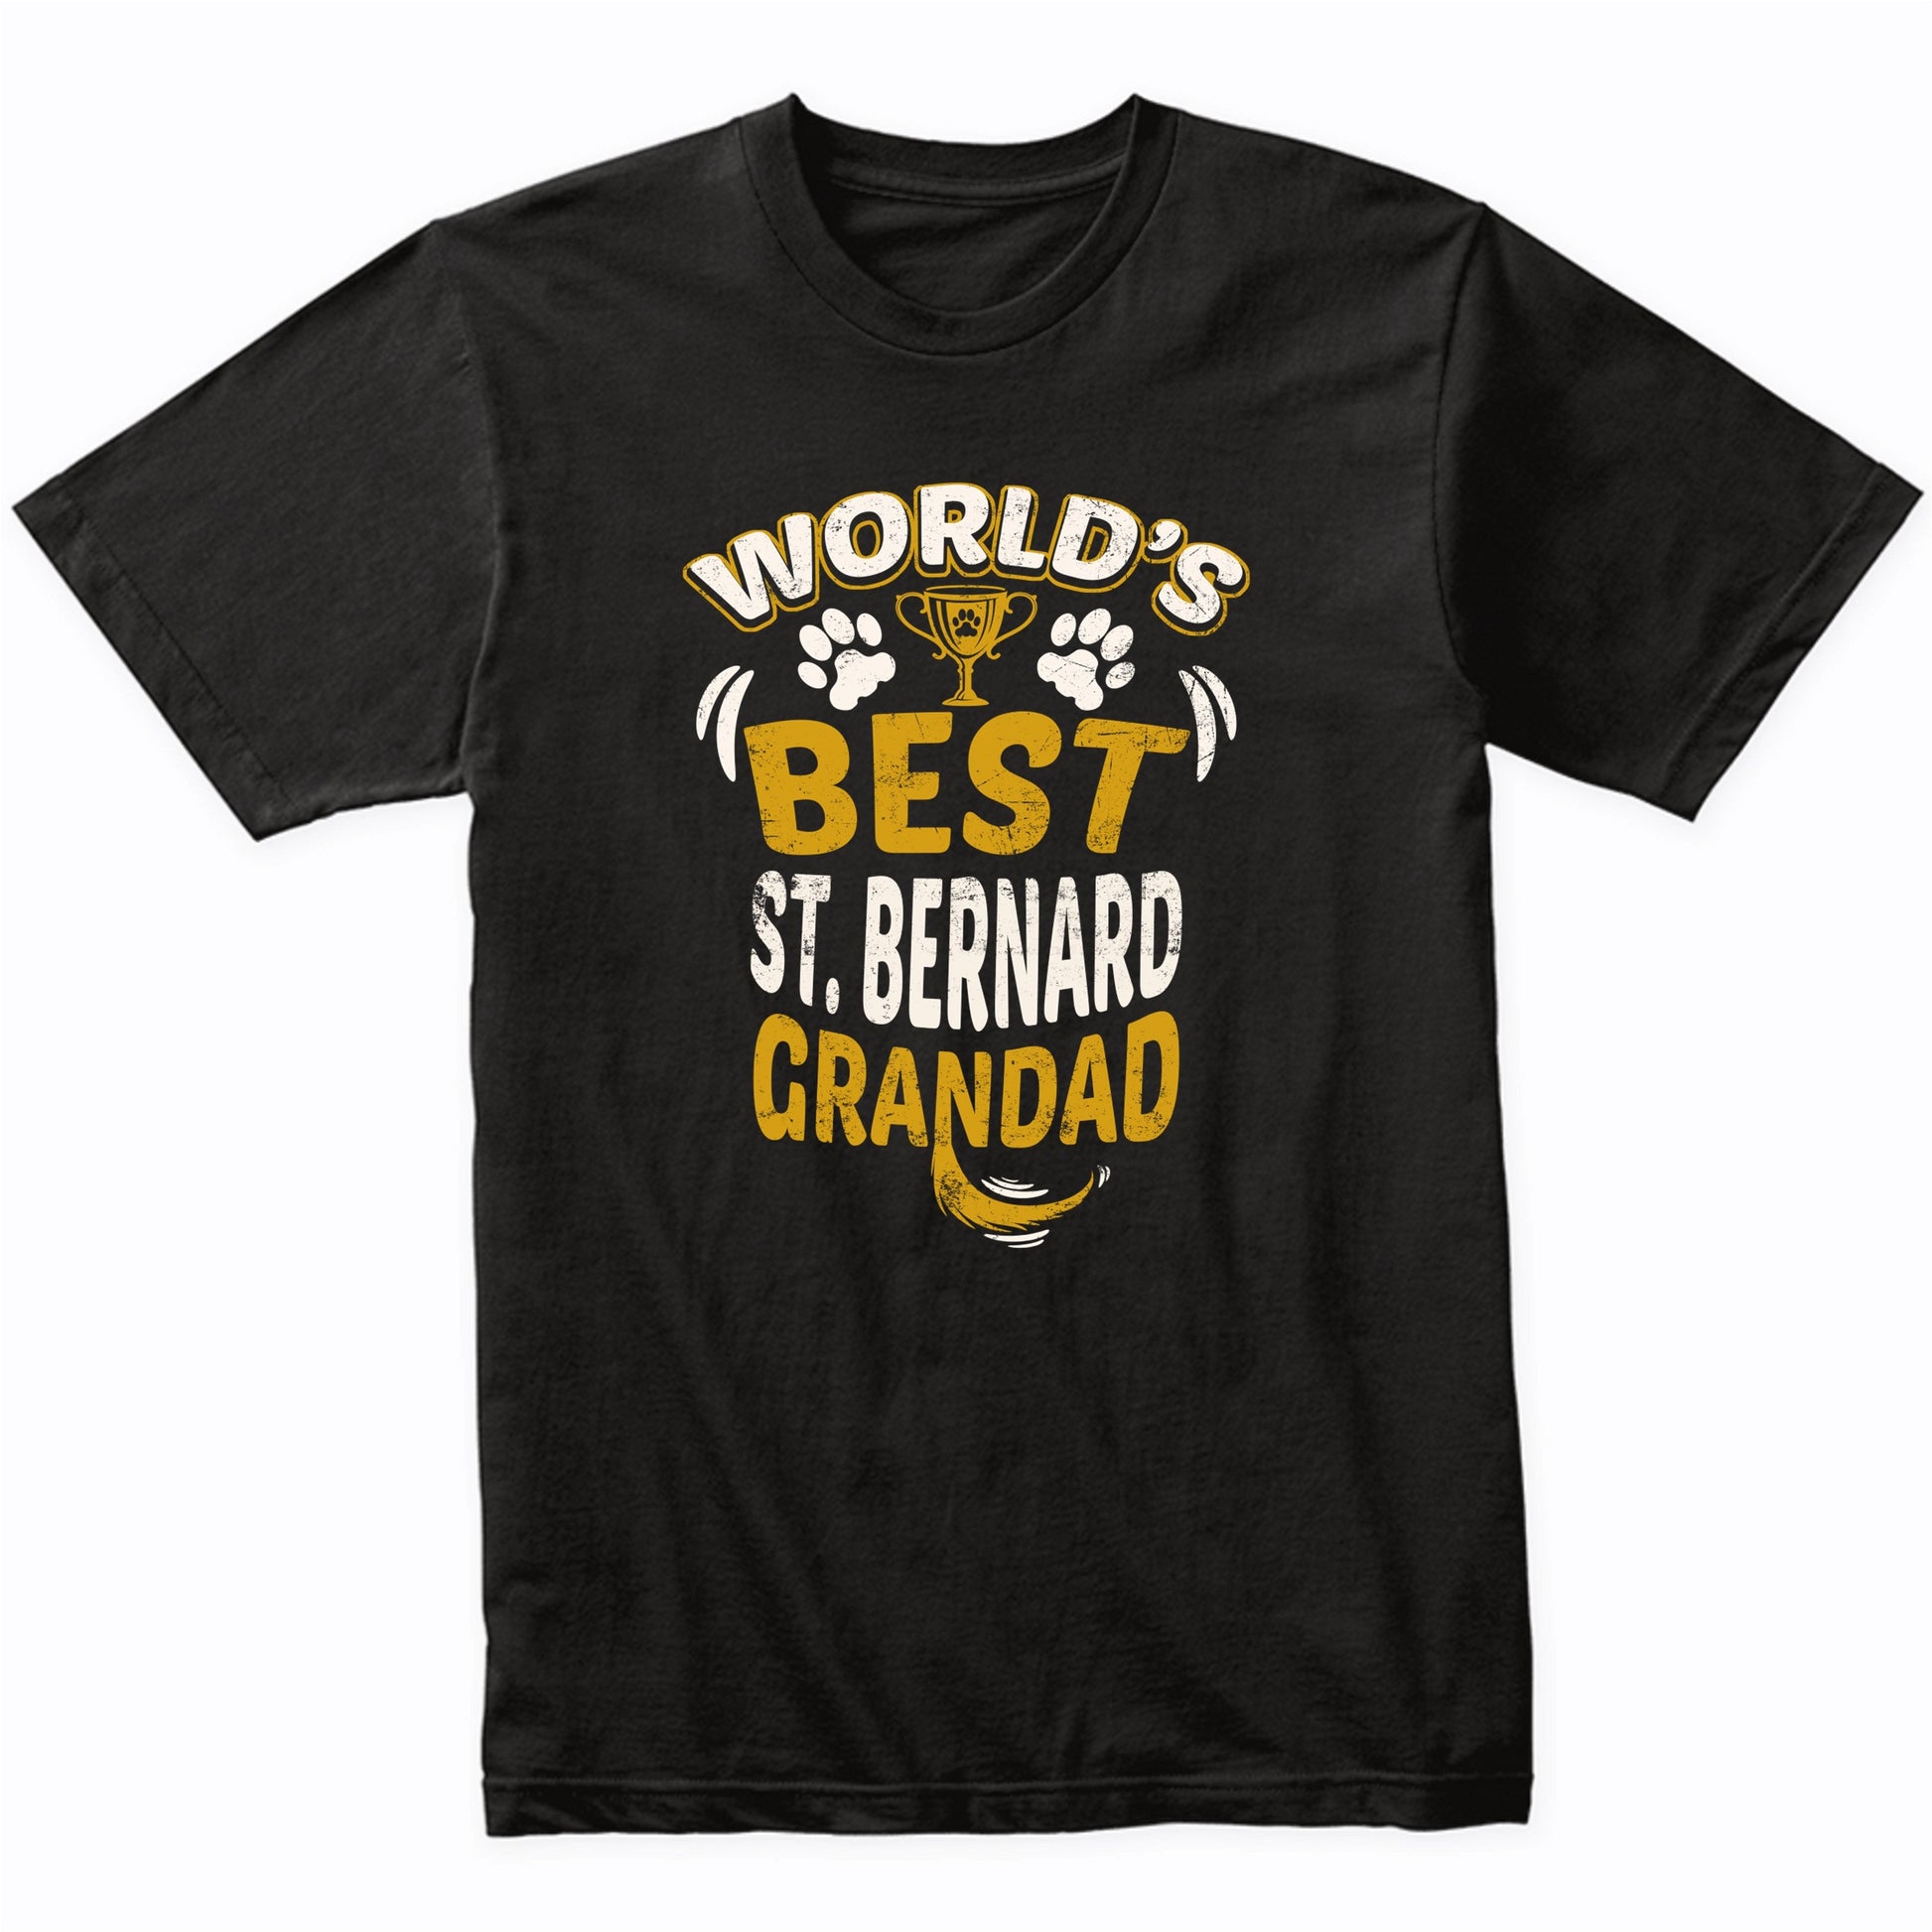 World's Best St. Bernard Grandad Graphic T-Shirt